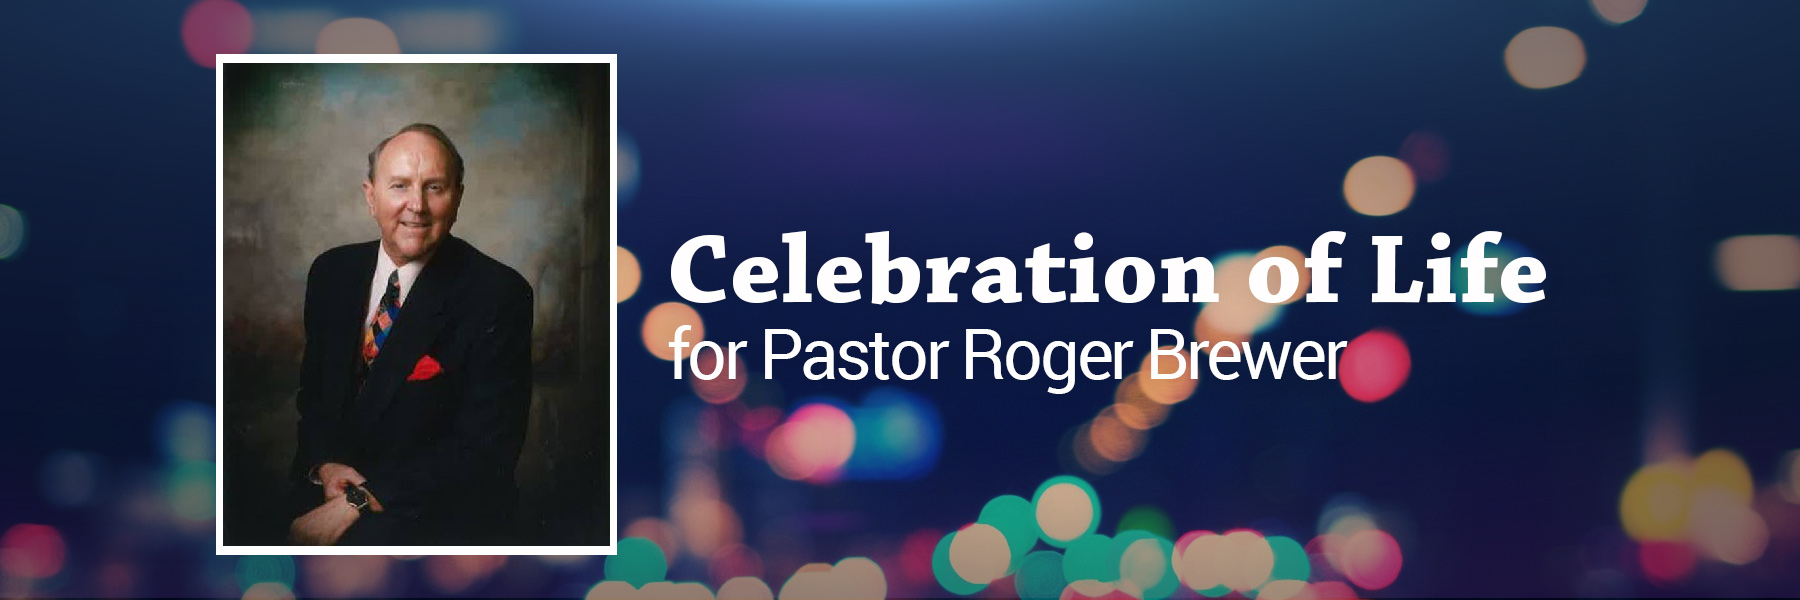 Celebration of Life for Pastor Roger Brewer.